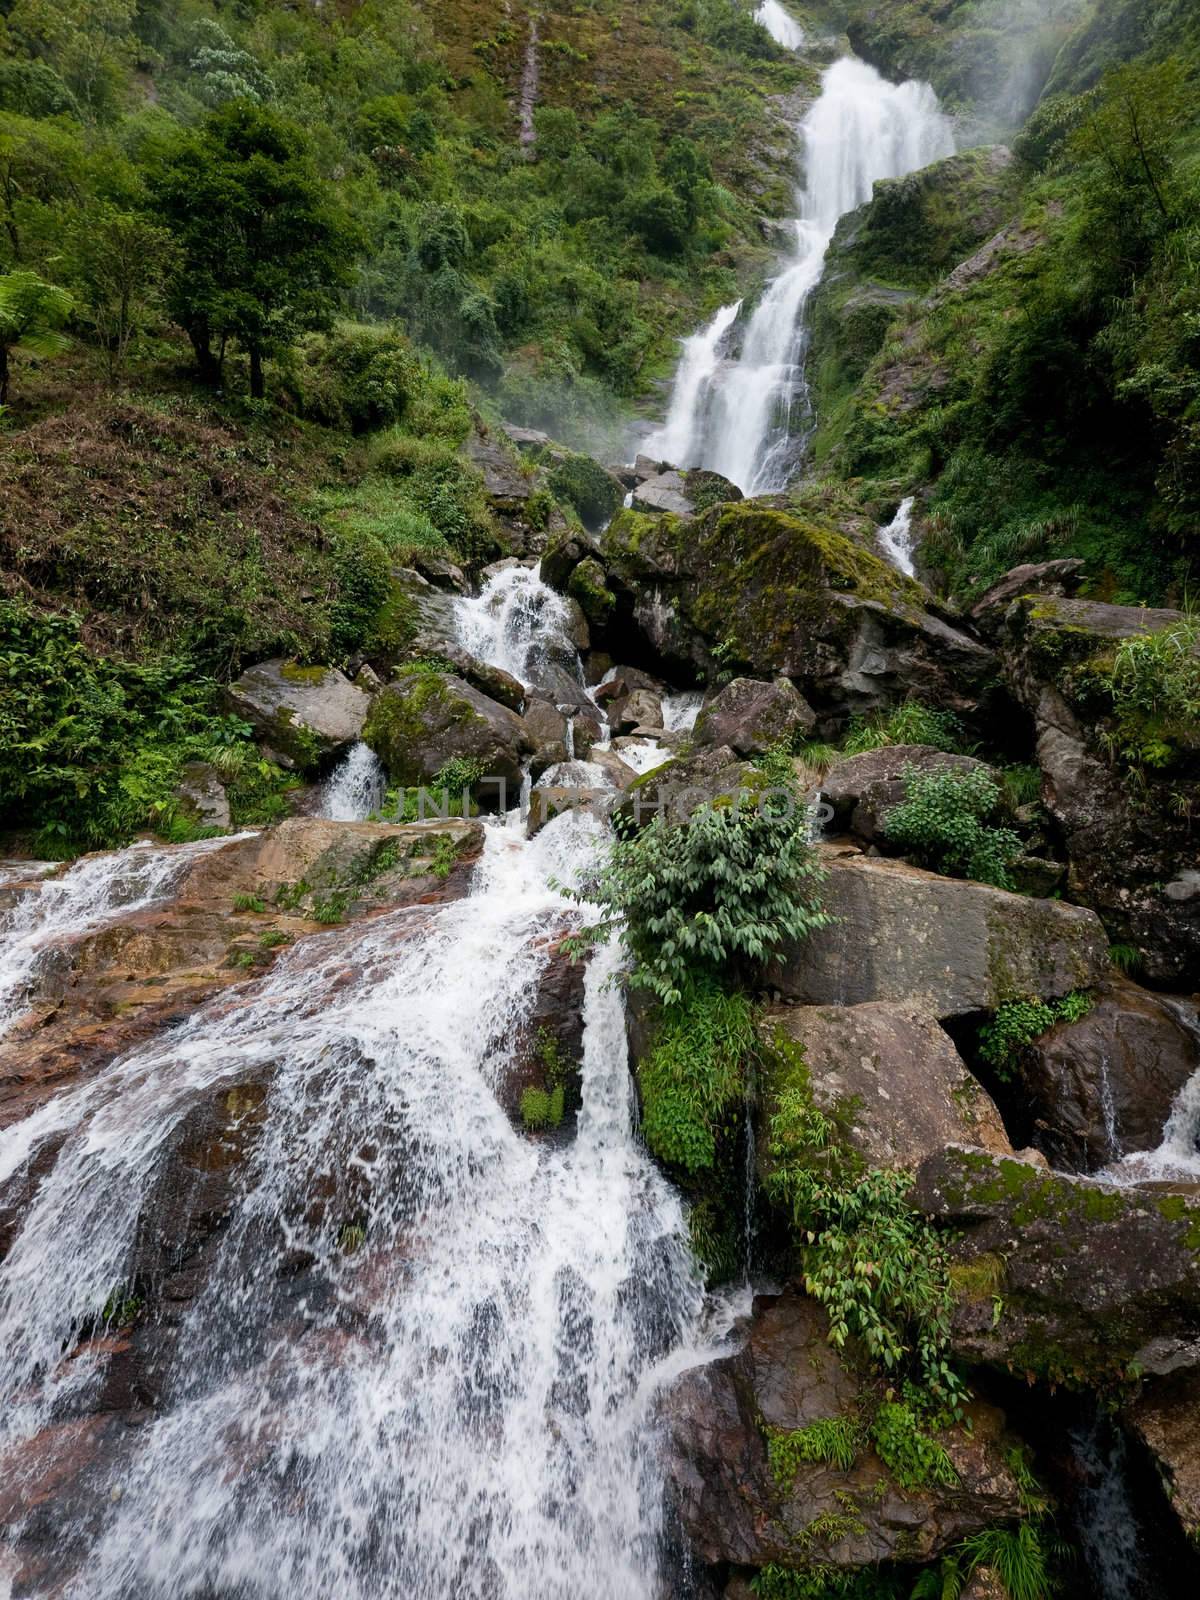 Thac Bac waterfall in Sapa, Vietnam by epixx